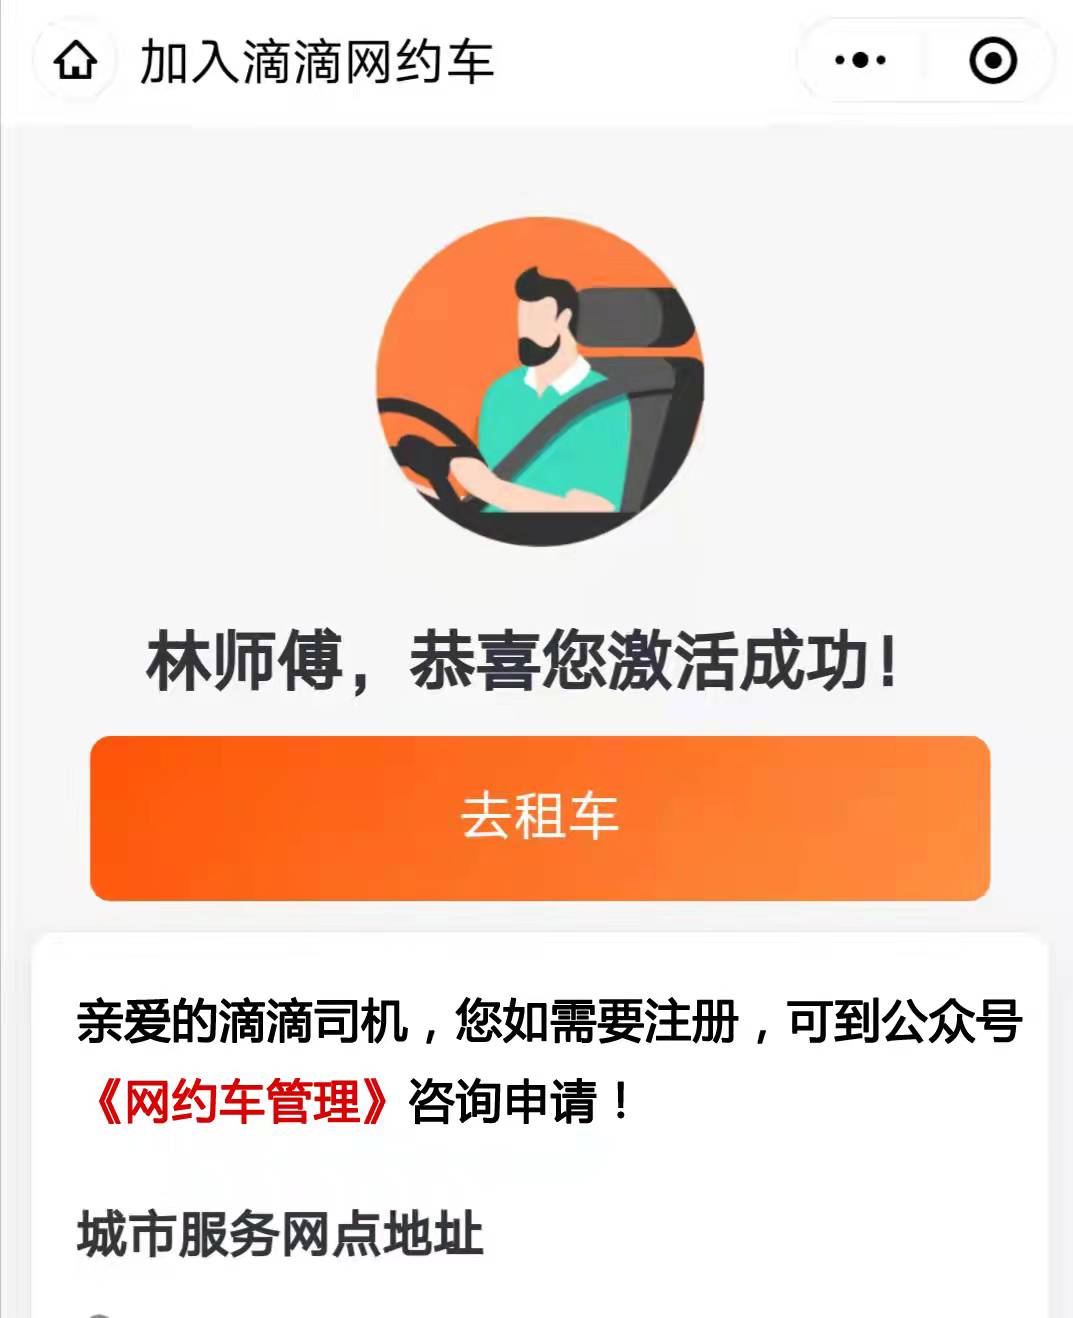 如何加入滴滴网约车司机,北京地区有驾照有车晚上想兼职跑车挣钱